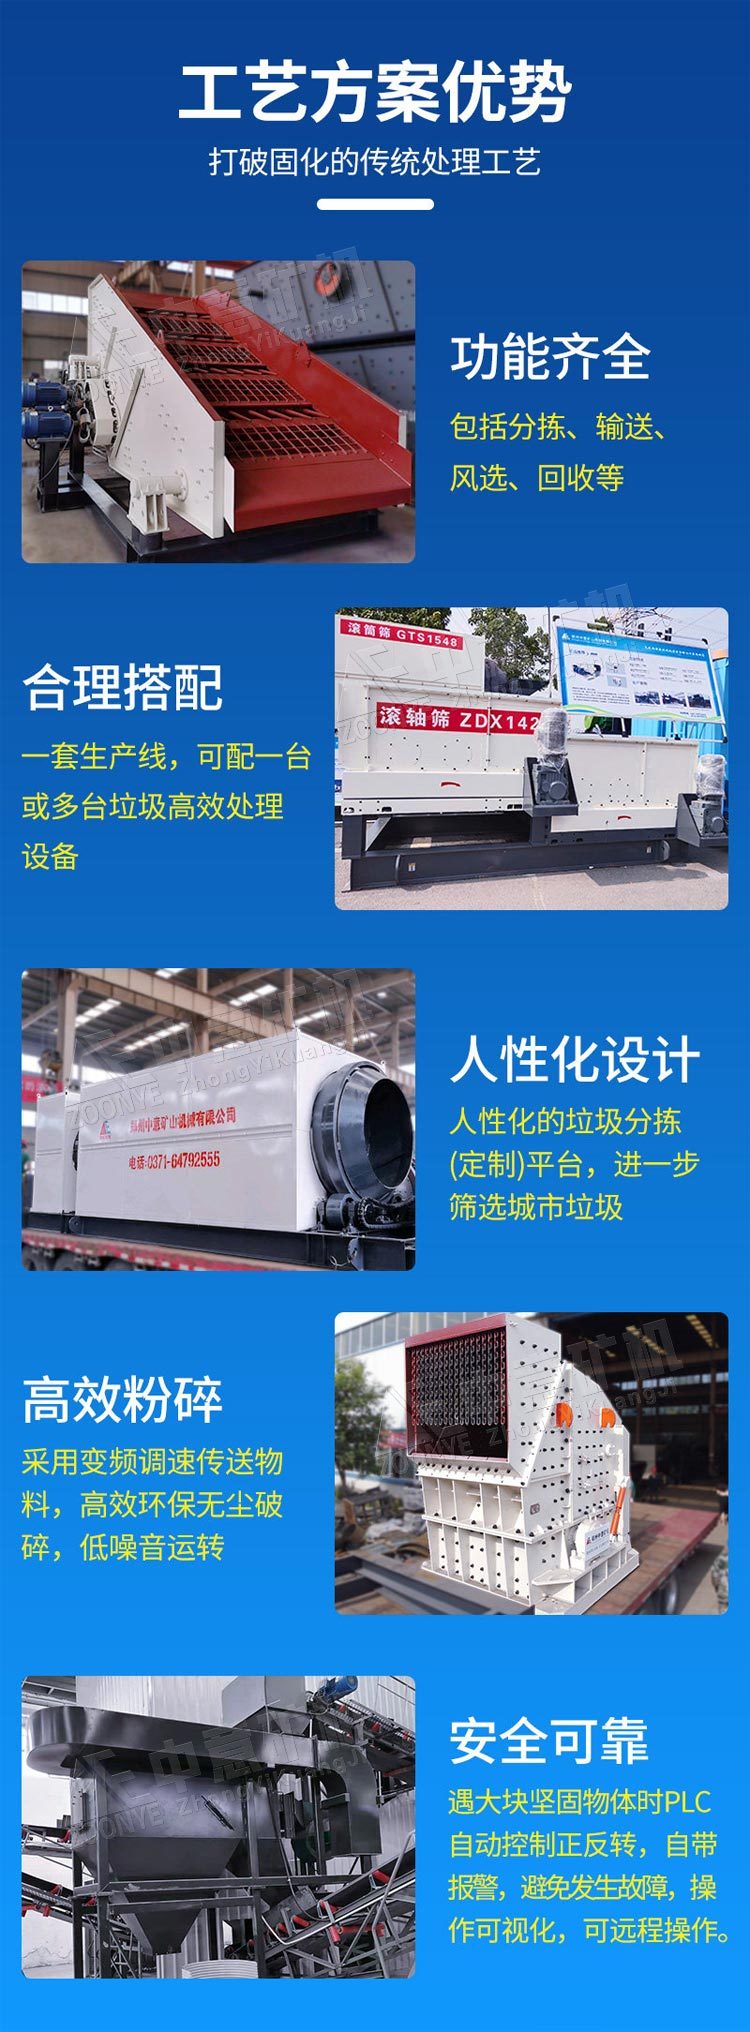 北京时处理200吨装修垃圾处理生产线设计方案liu88